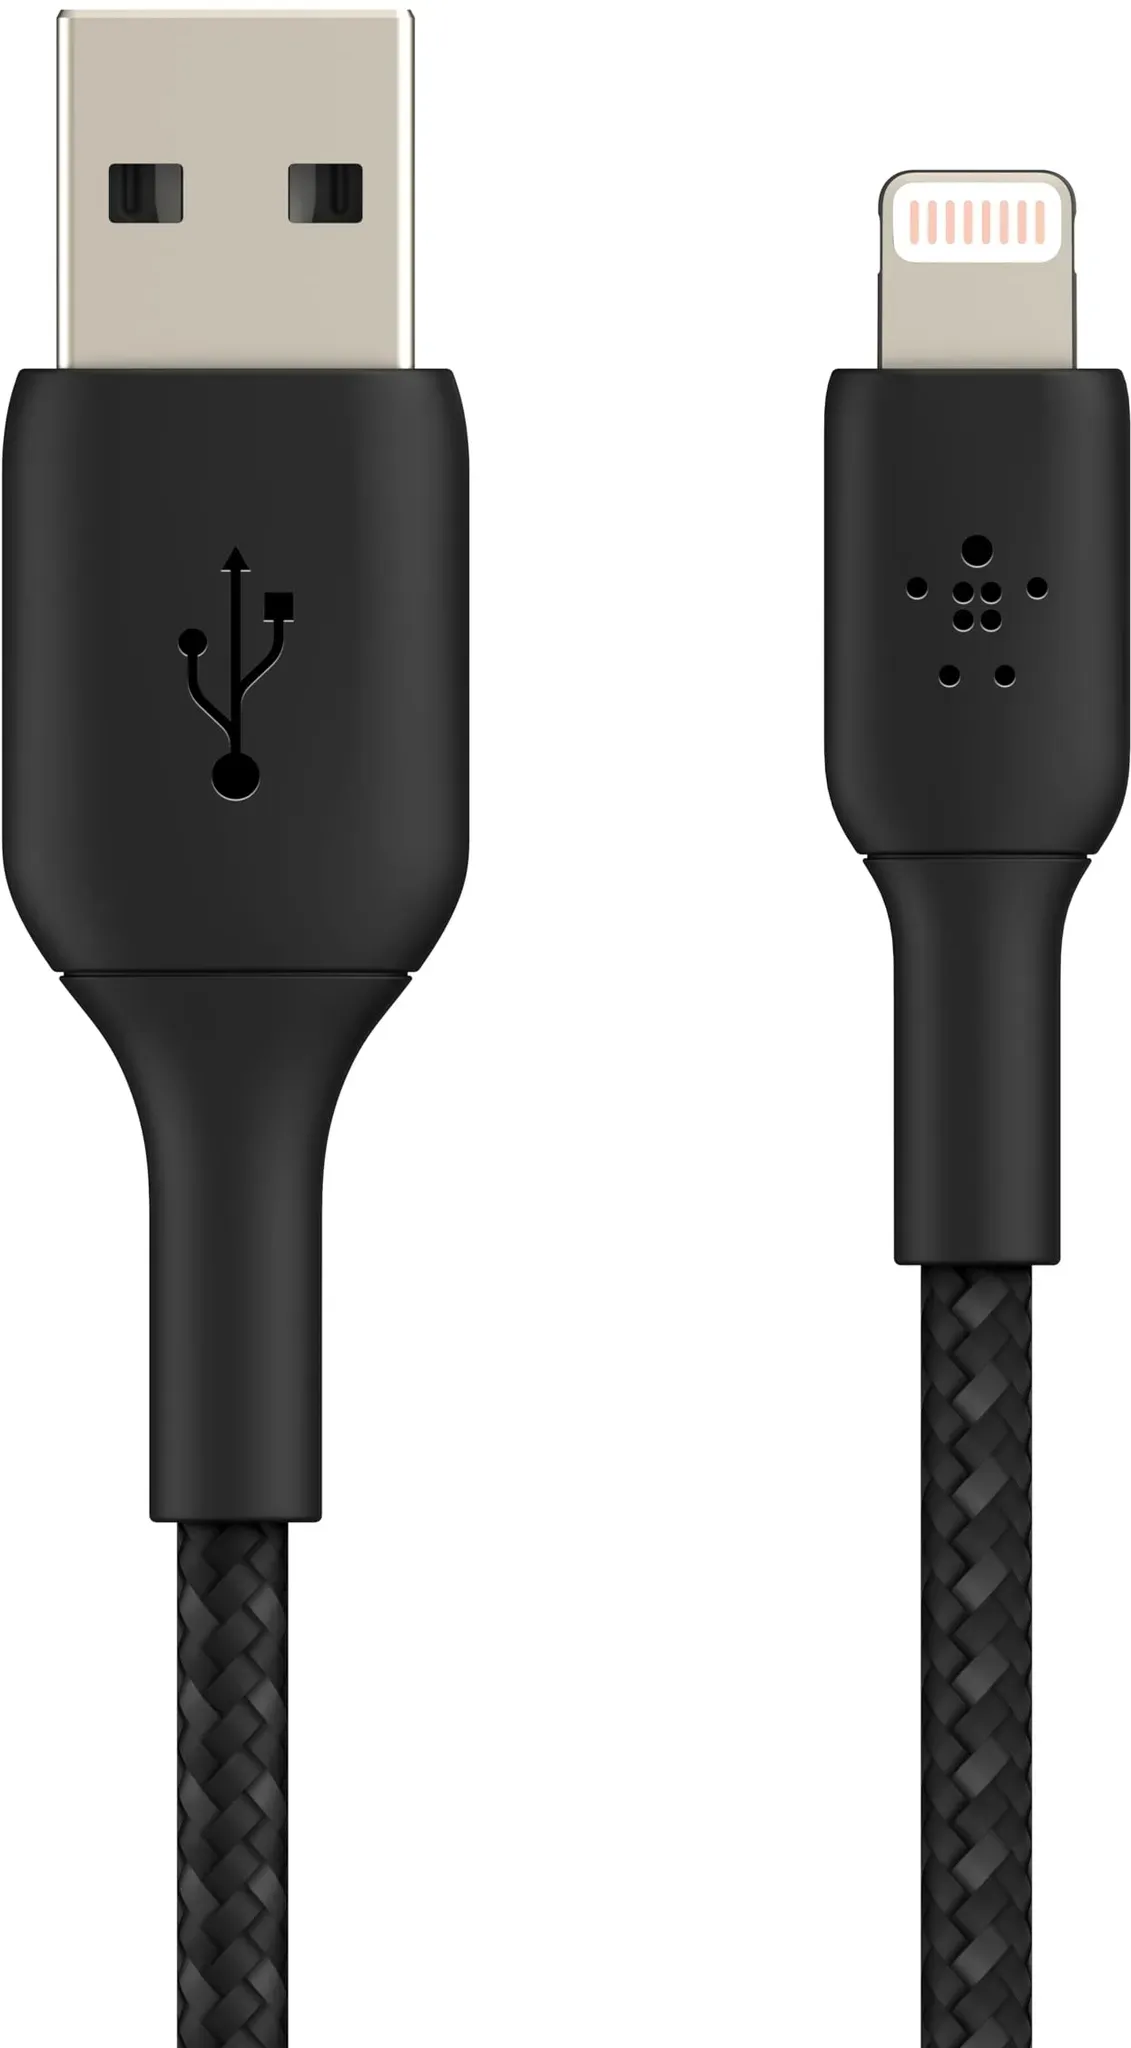 Belkin geflochtenes Lightning-Kabel (Boost Charge Lightning-/USB-Kabel für iPhone, iPad, AirPods) MFi-zertifiziertes iPhone-Ladekabel, geflochtenes Lightning-Kabel (1 m, Schwarz)